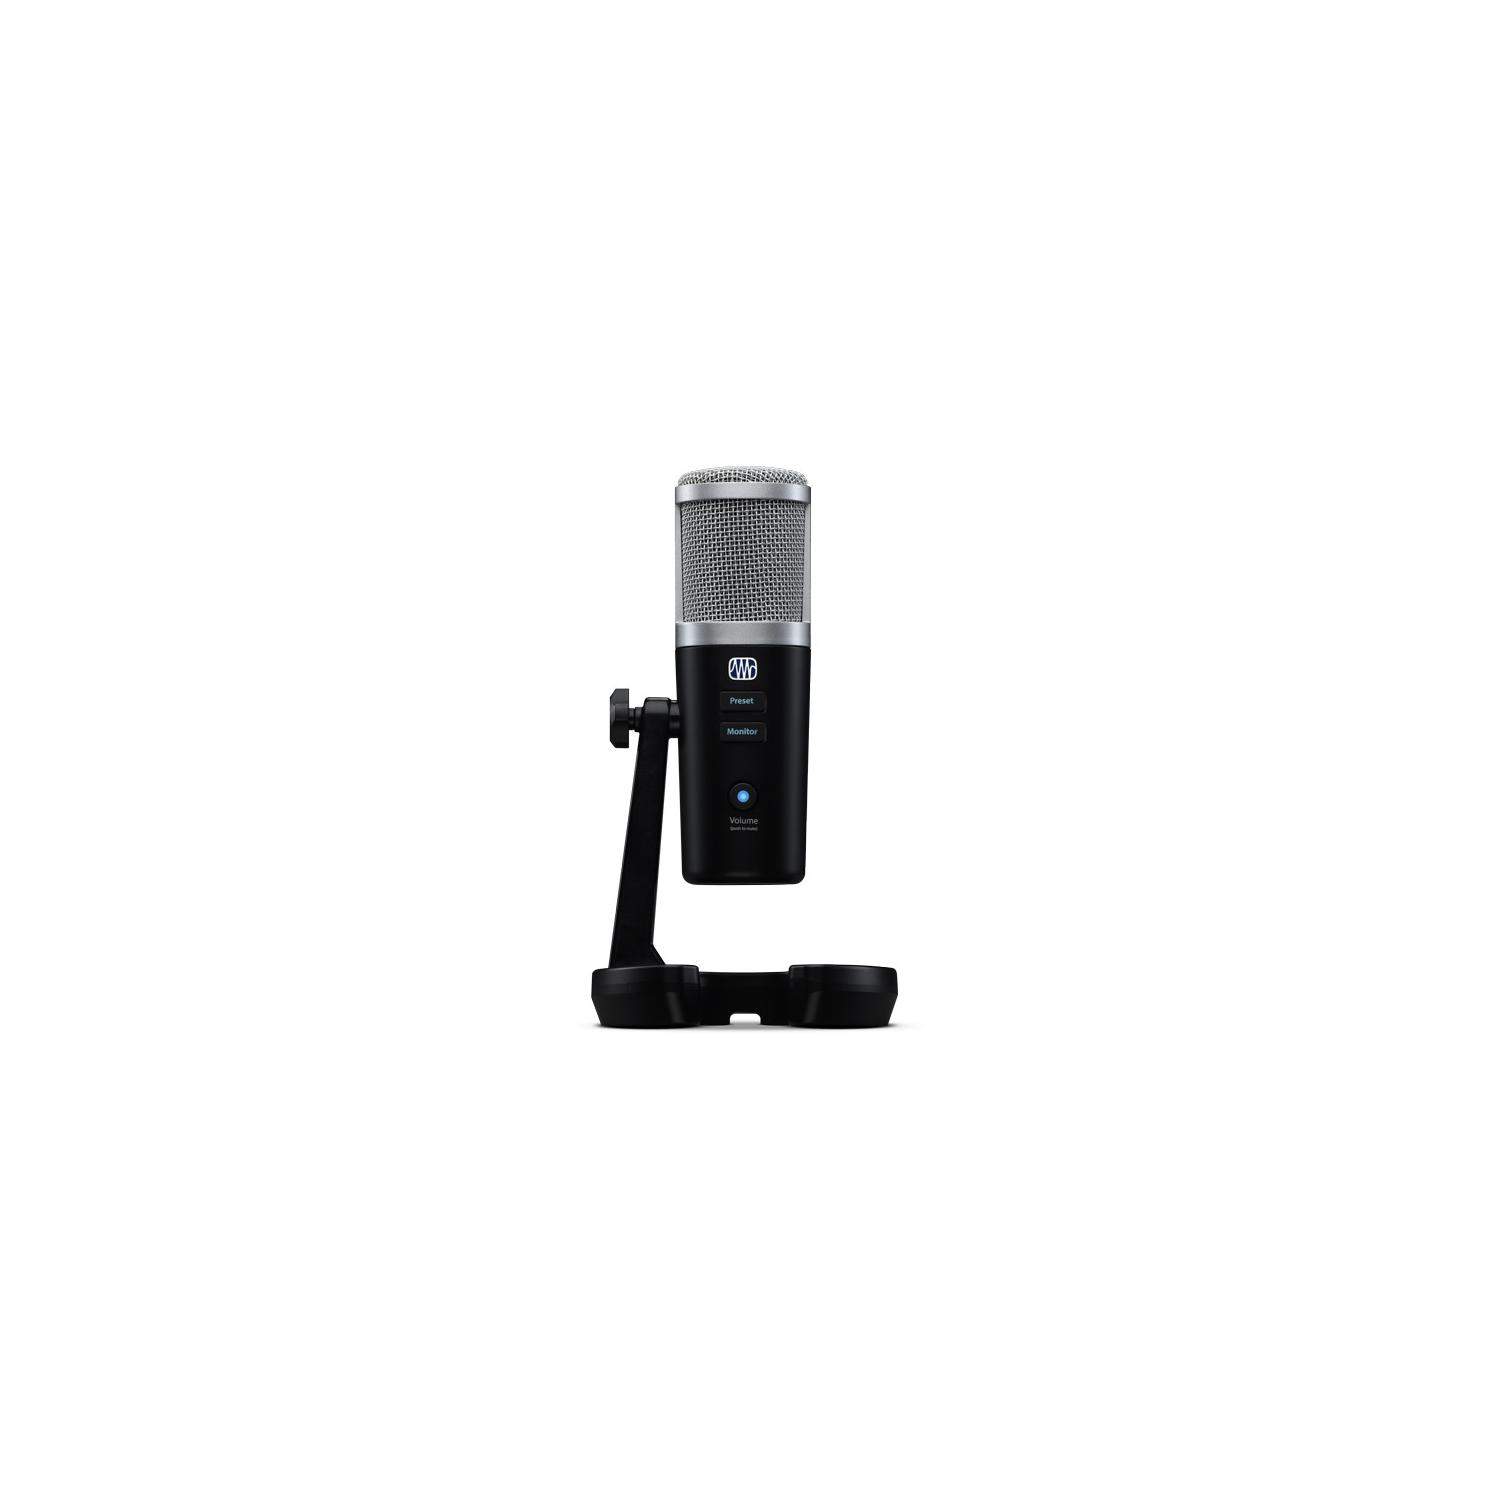 PreSonus Revelator | Mikrofony pojemnościowy USB-C, 3 charakterystyki, EQ, kompresor, bramka, limiter, reverb, interfejs audio